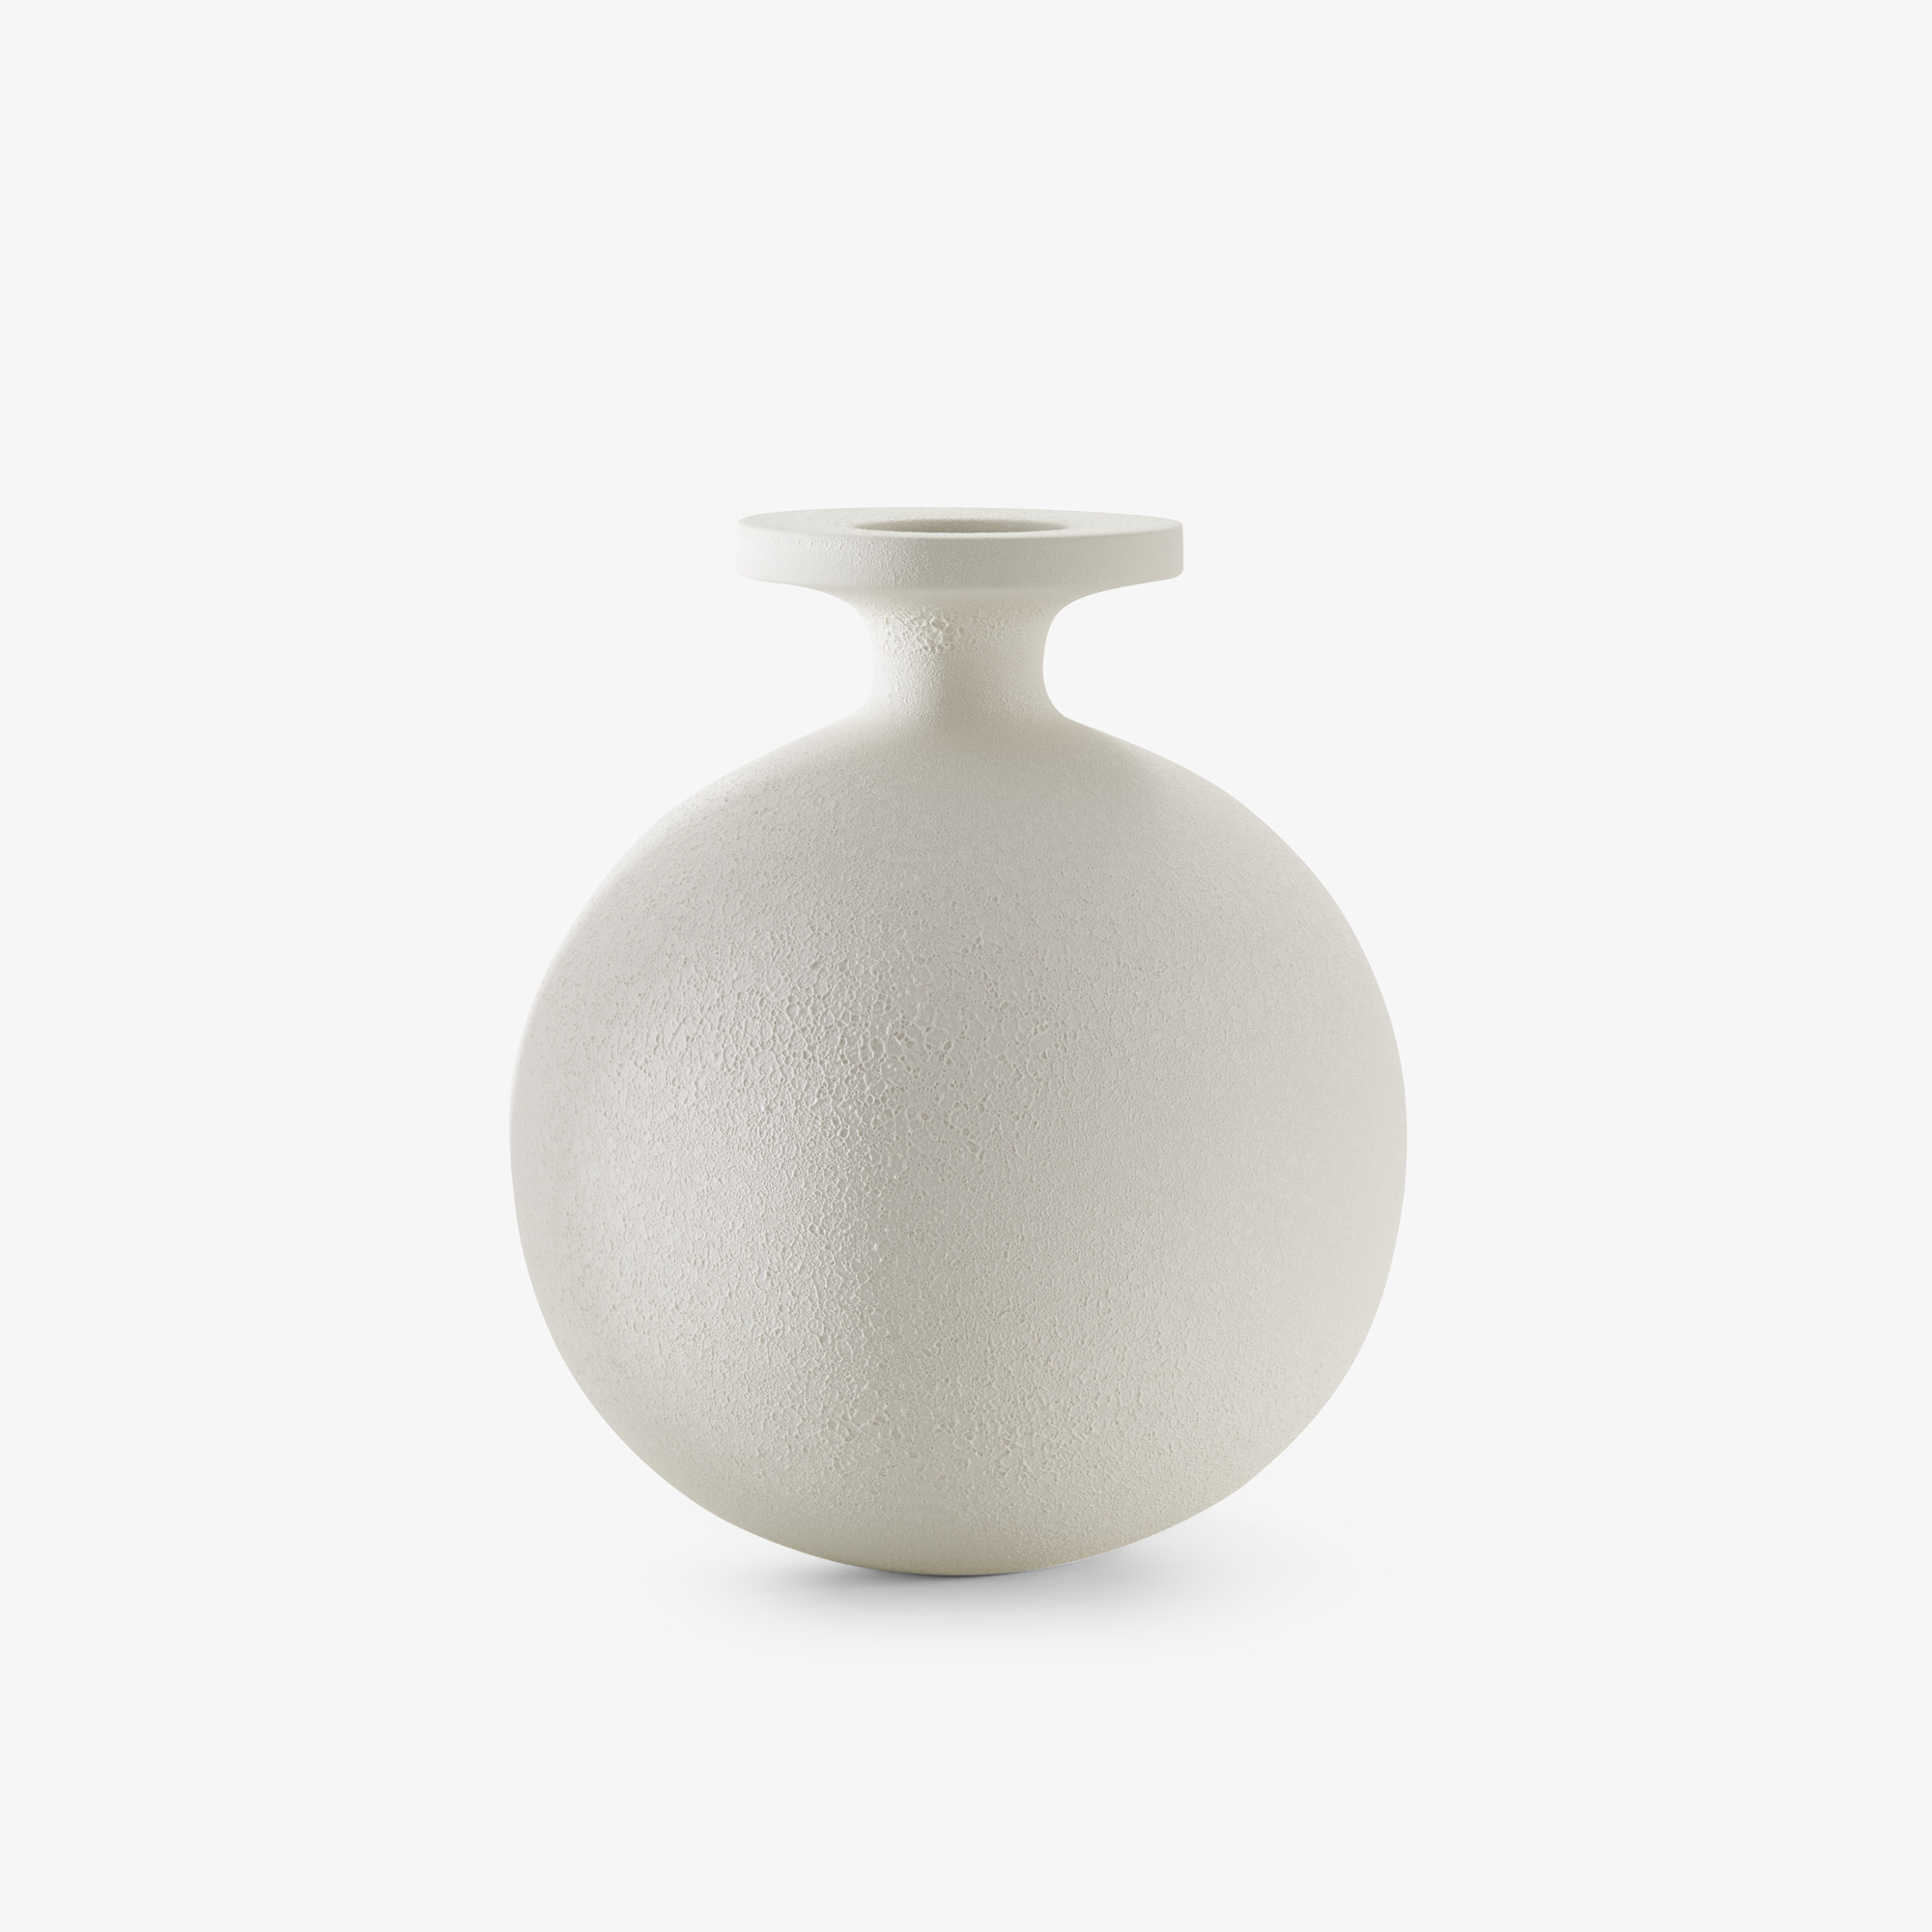 Image 花瓶 大型 白色 1